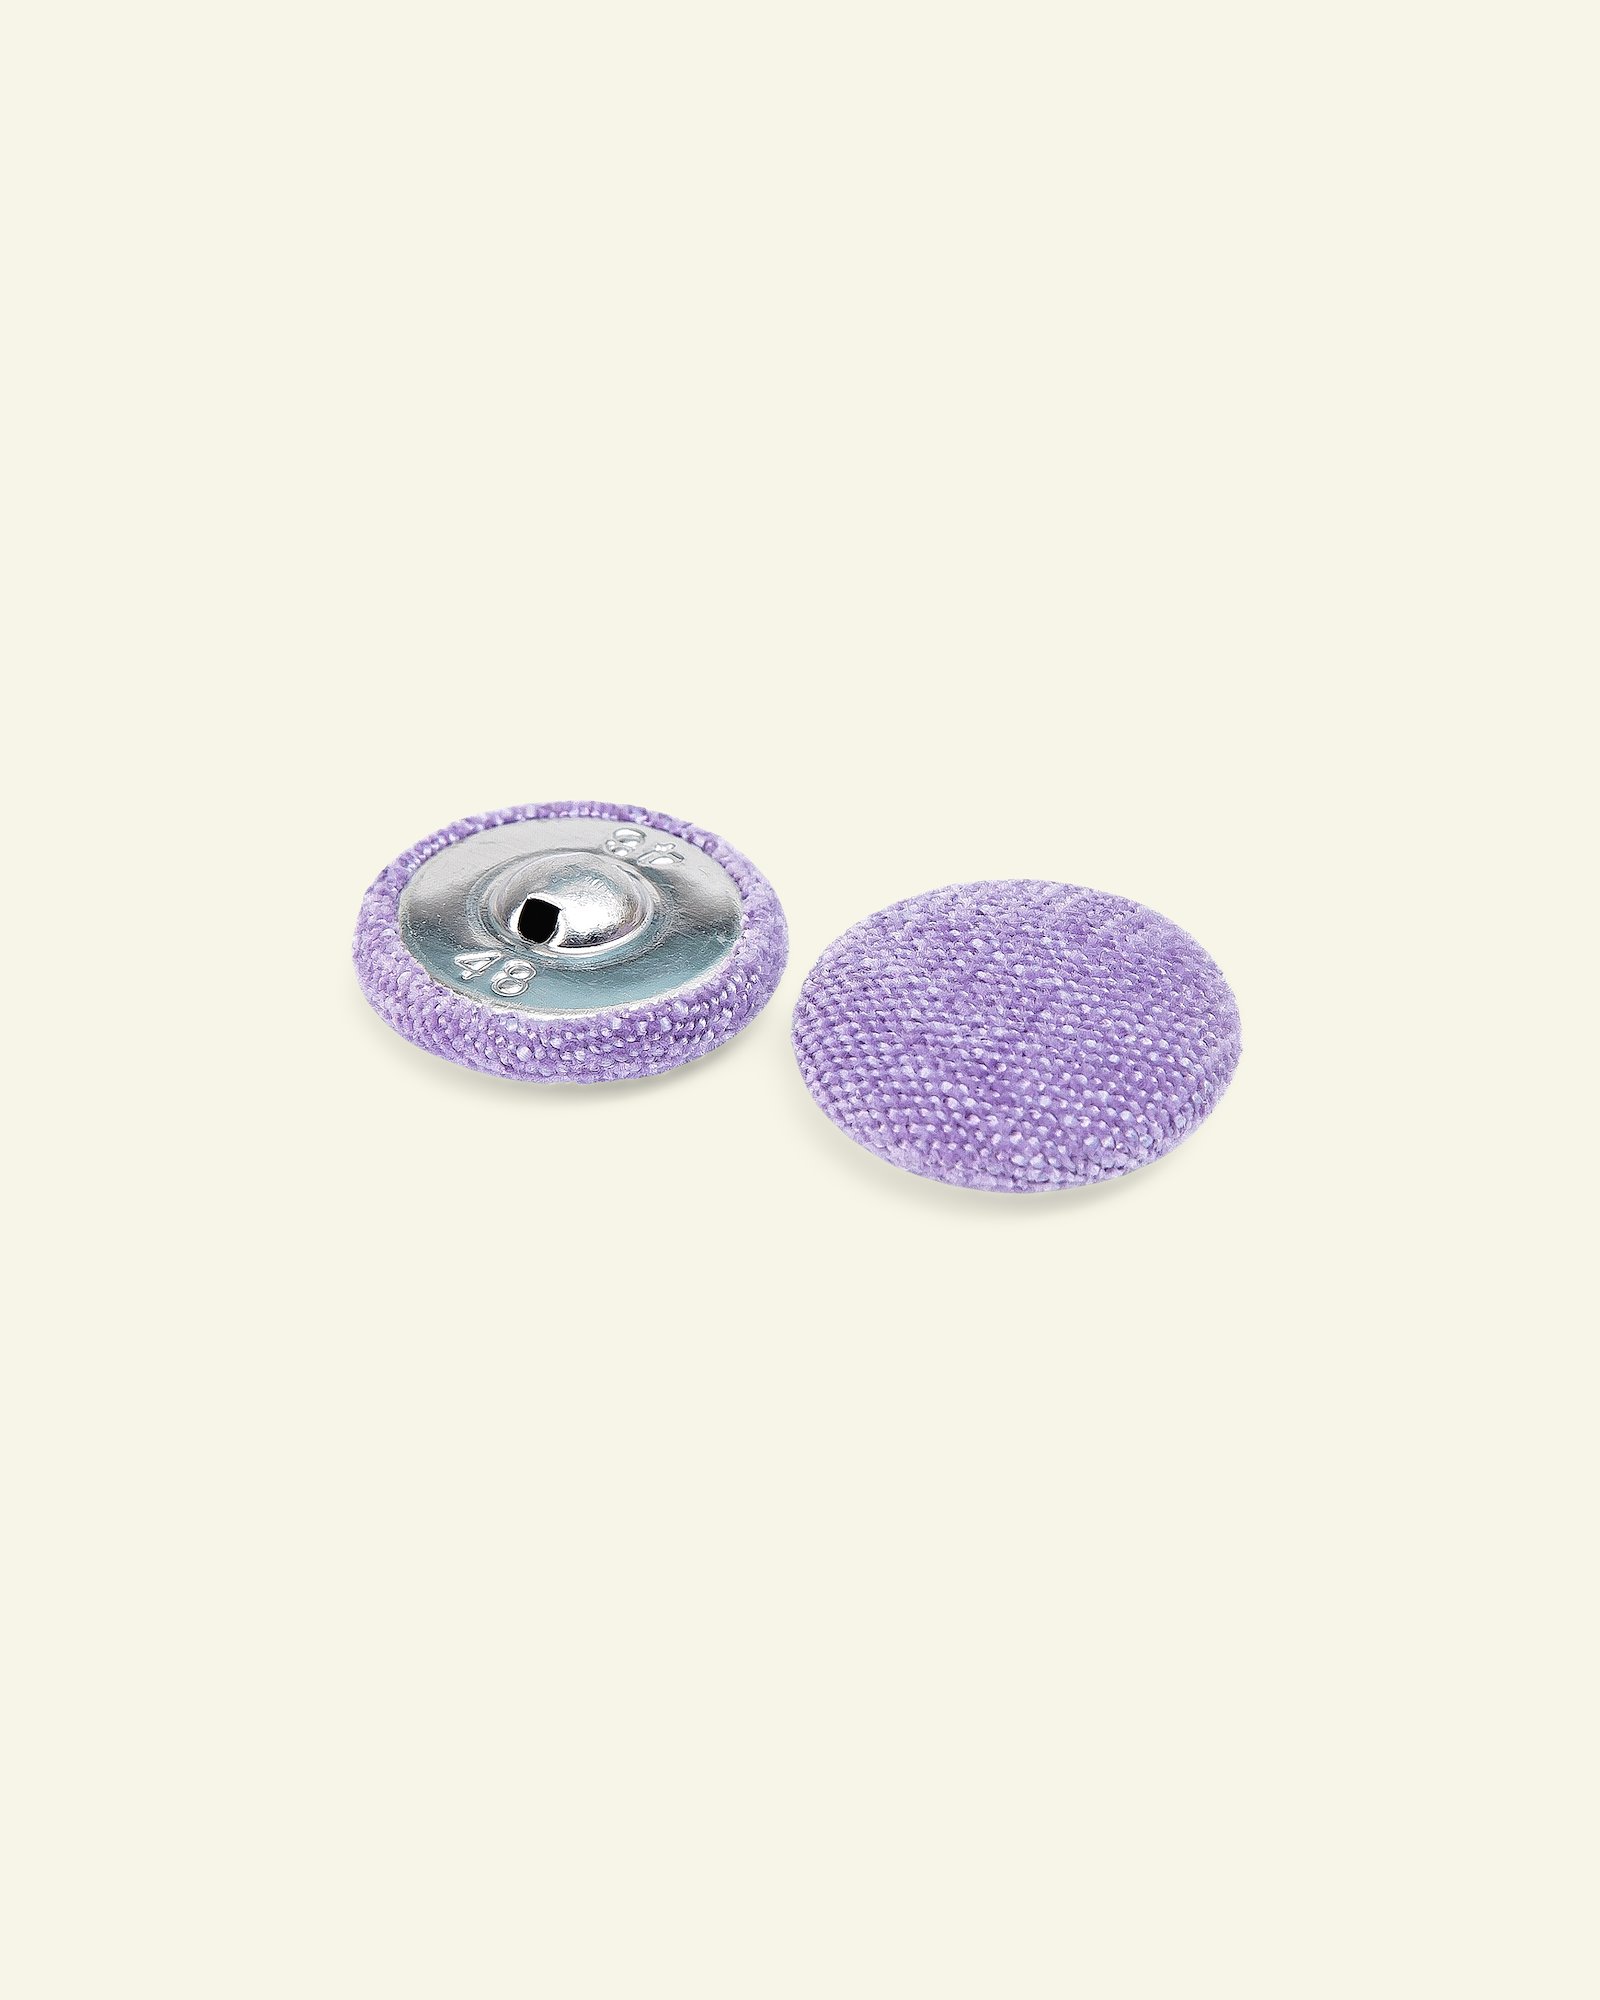 Shank button chenille 30mm lavender 2pcs 40528_pack